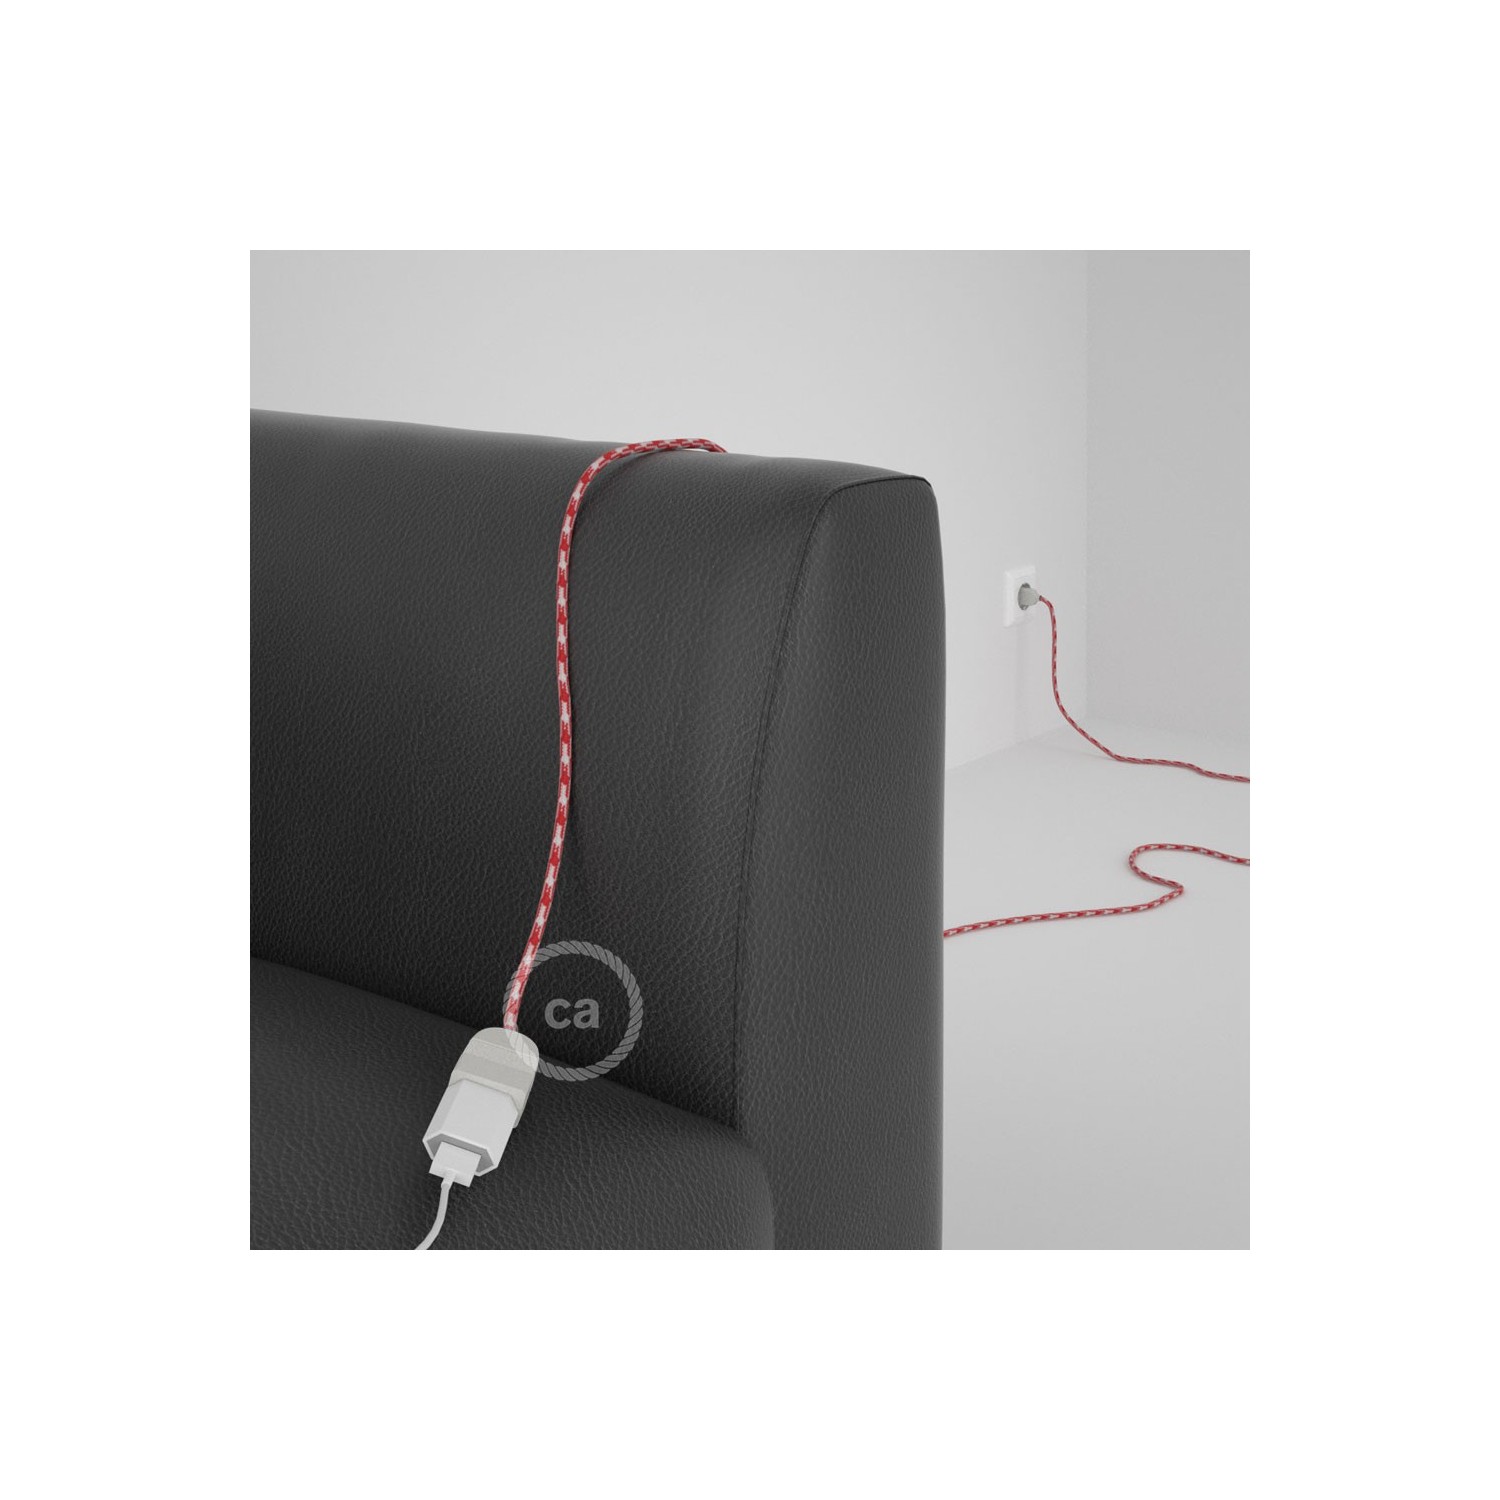 Rallonge électrique avec câble textile RP09 Effet Soie Bicolore Blanc-Rouge 2P 10A Made in Italy.